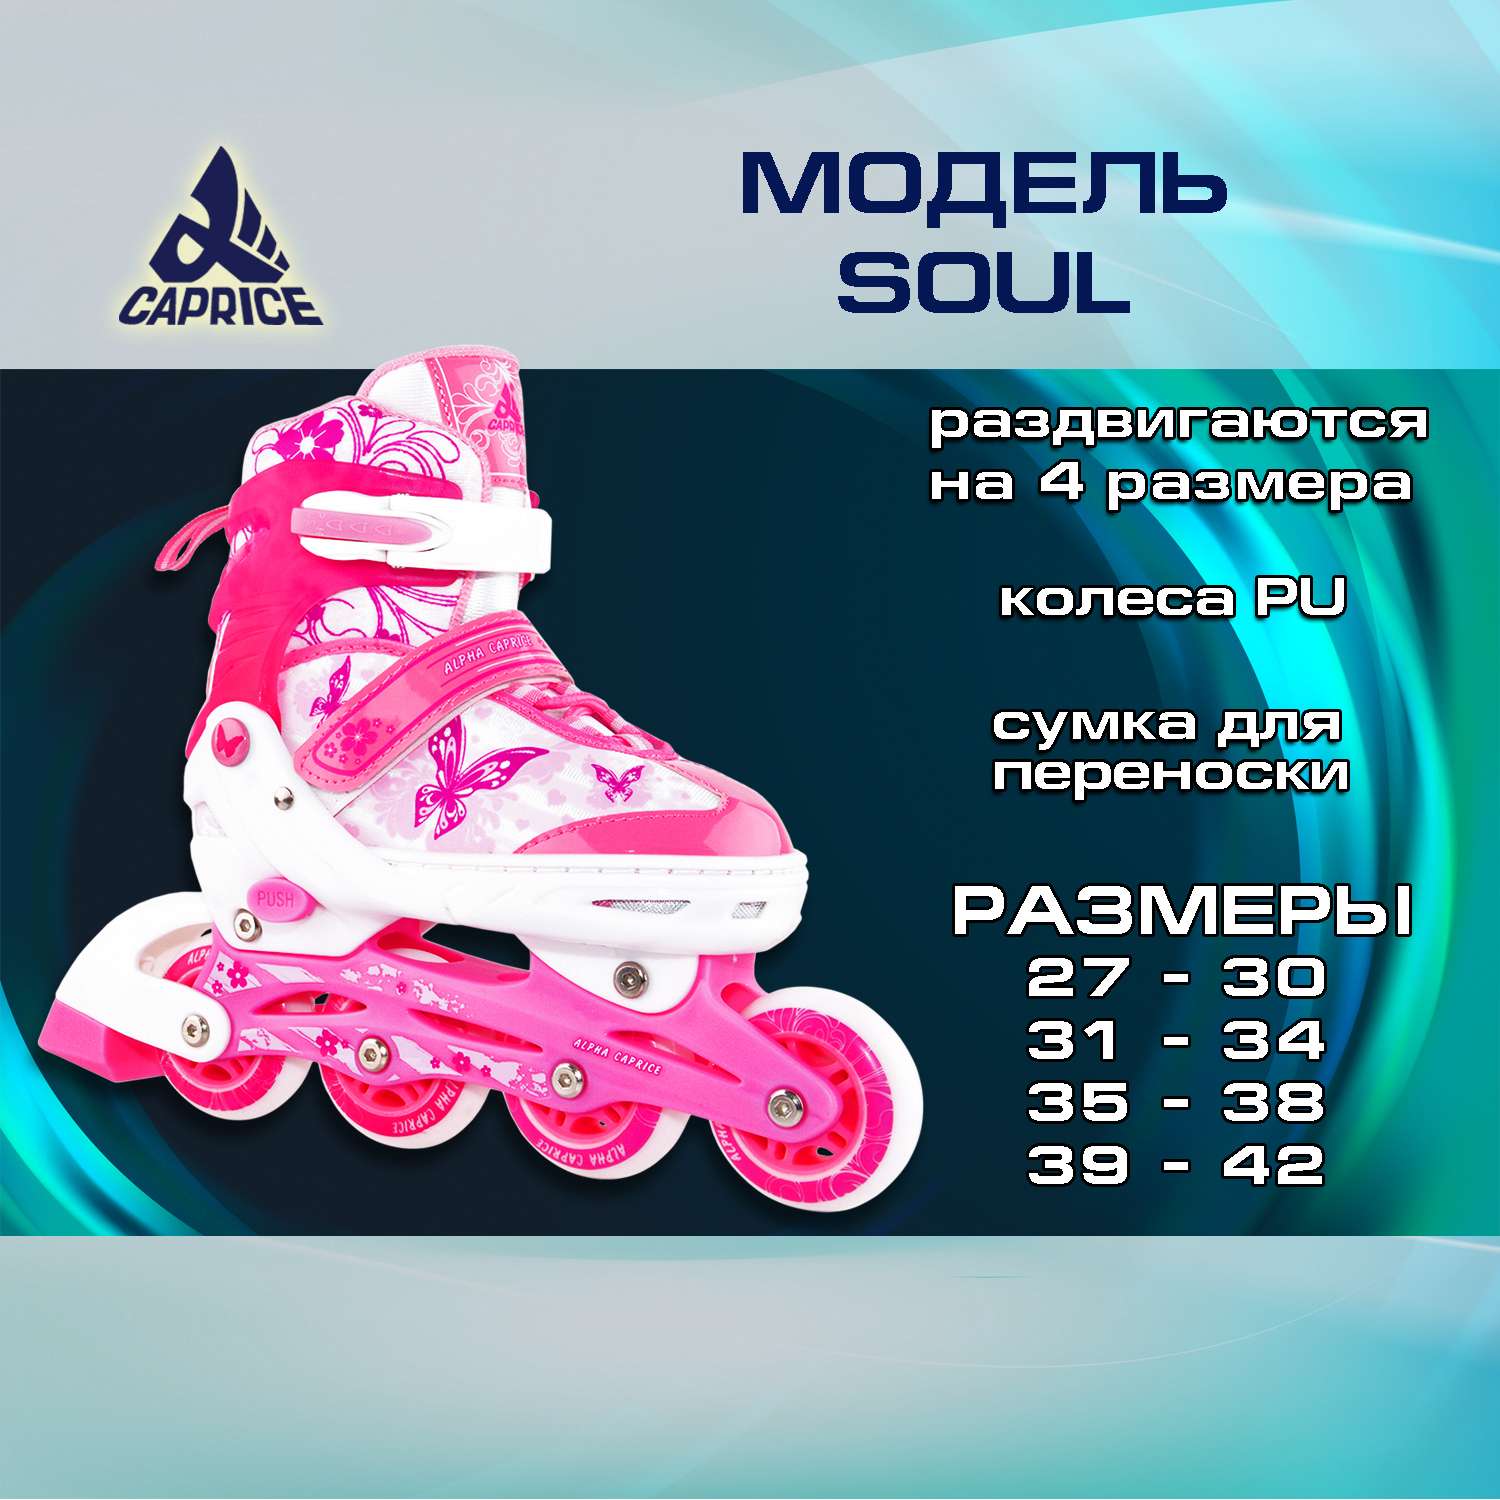 Раздвижные роликовые коньки Alpha Caprice Soul Pink размер M 35-38 - фото 2